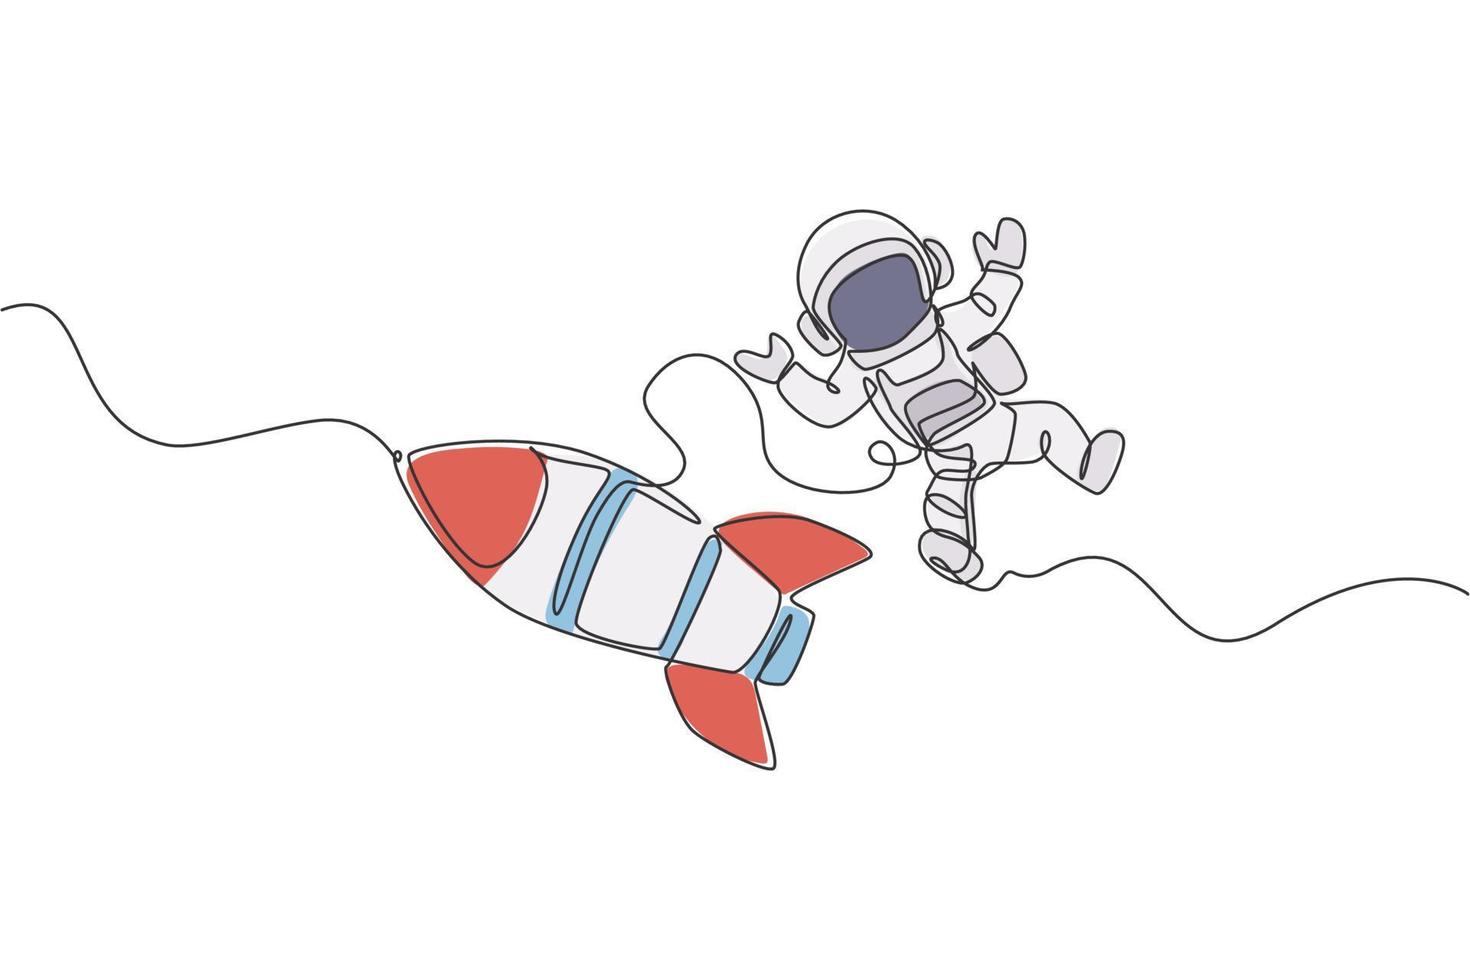 disegno a linea continua di astronauta in tuta spaziale che vola nello spazio esterno con astronave a razzo. concetto di astronomia della via lattea di scienza. illustrazione grafica vettoriale di design di una linea di tendenza alla moda